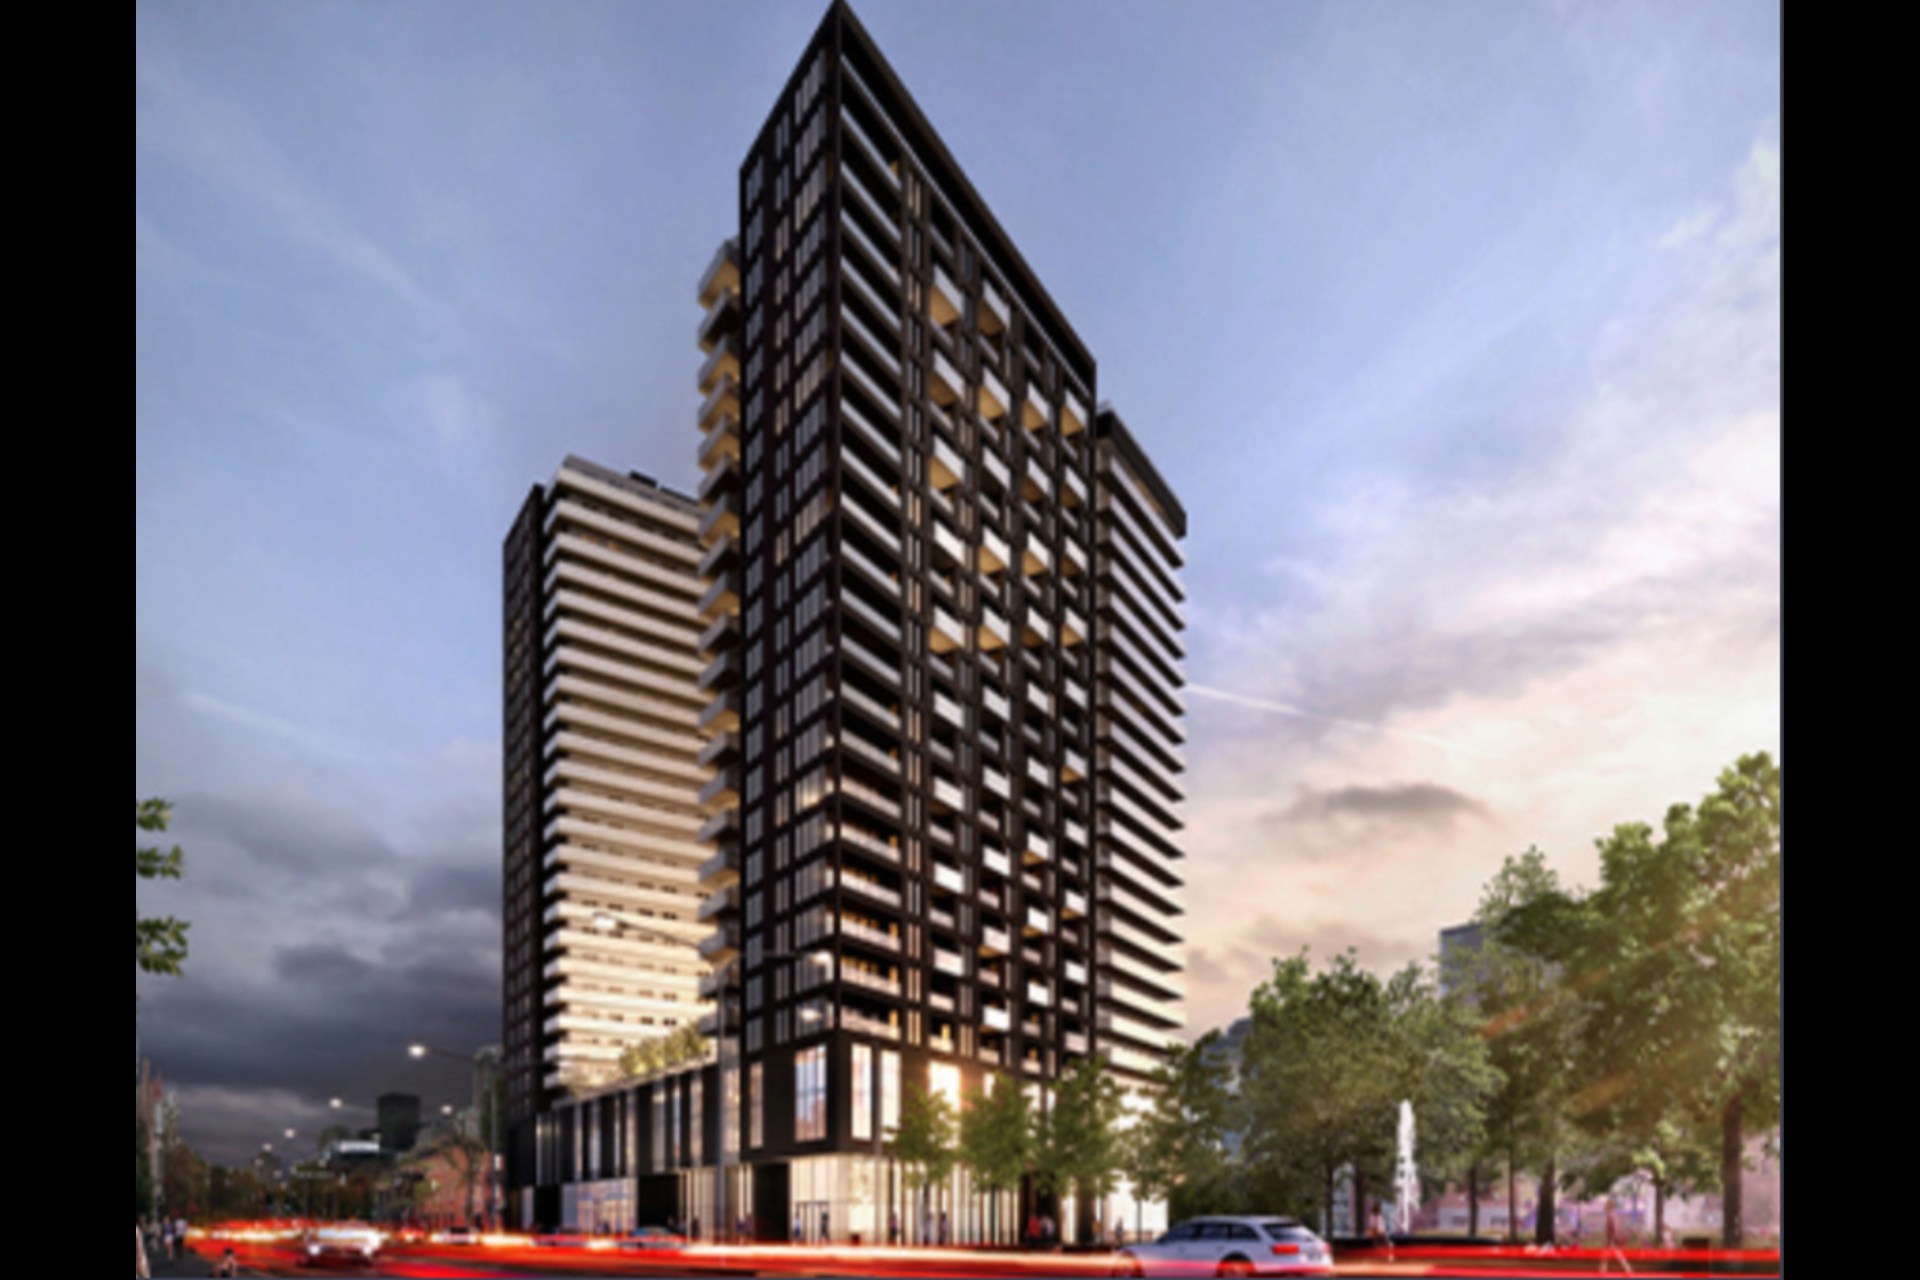 image 8 - MX - Condominio vertical - MX Para alquiler Montréal - 5 habitaciones